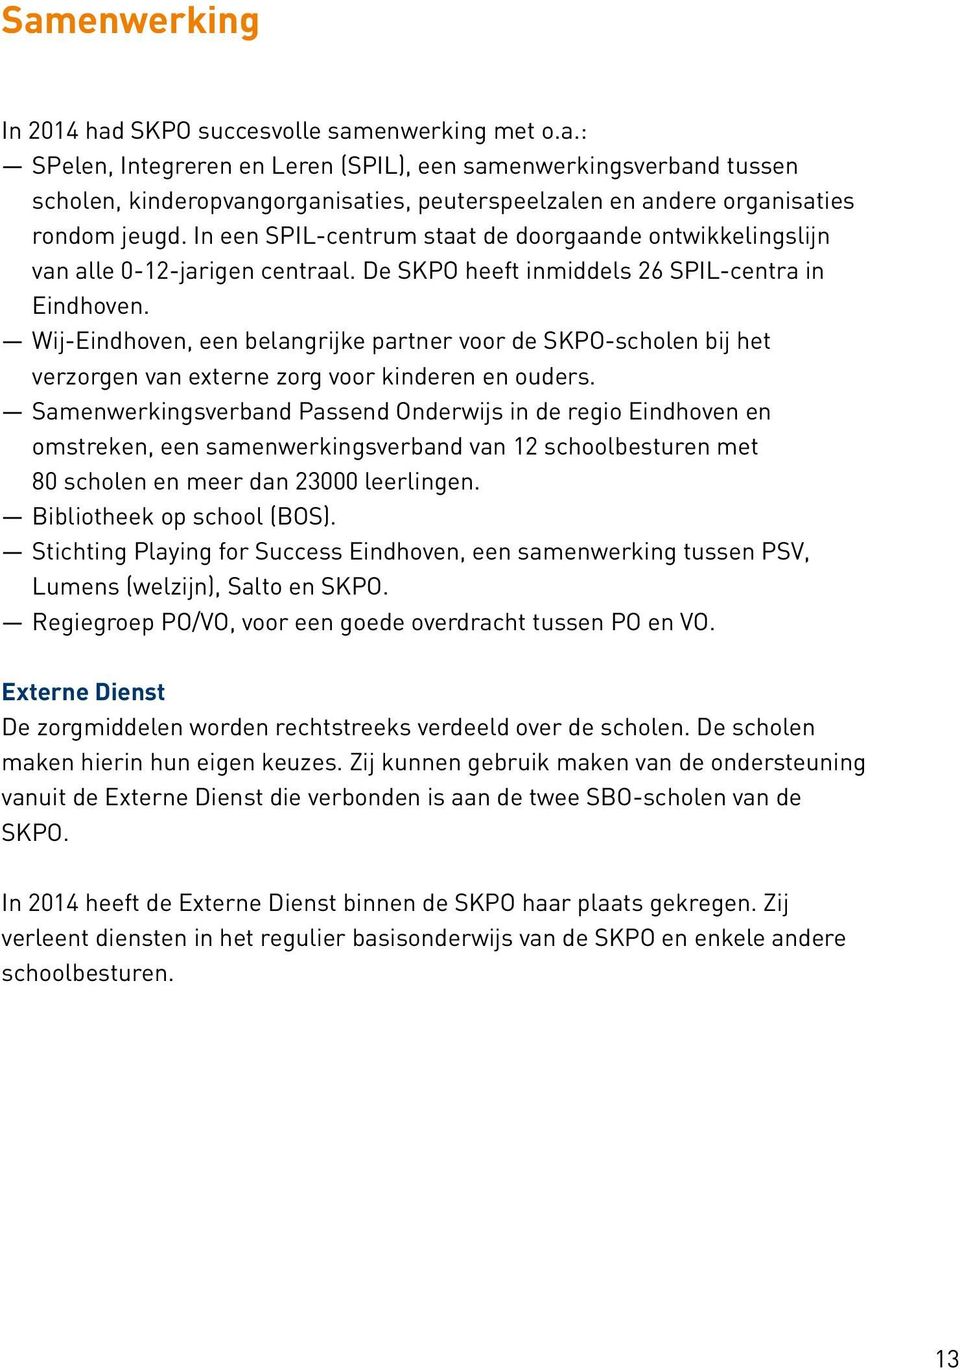 Wij-Eindhoven, een belangrijke partner voor de SKPO-scholen bij het verzorgen van externe zorg voor kinderen en ouders.